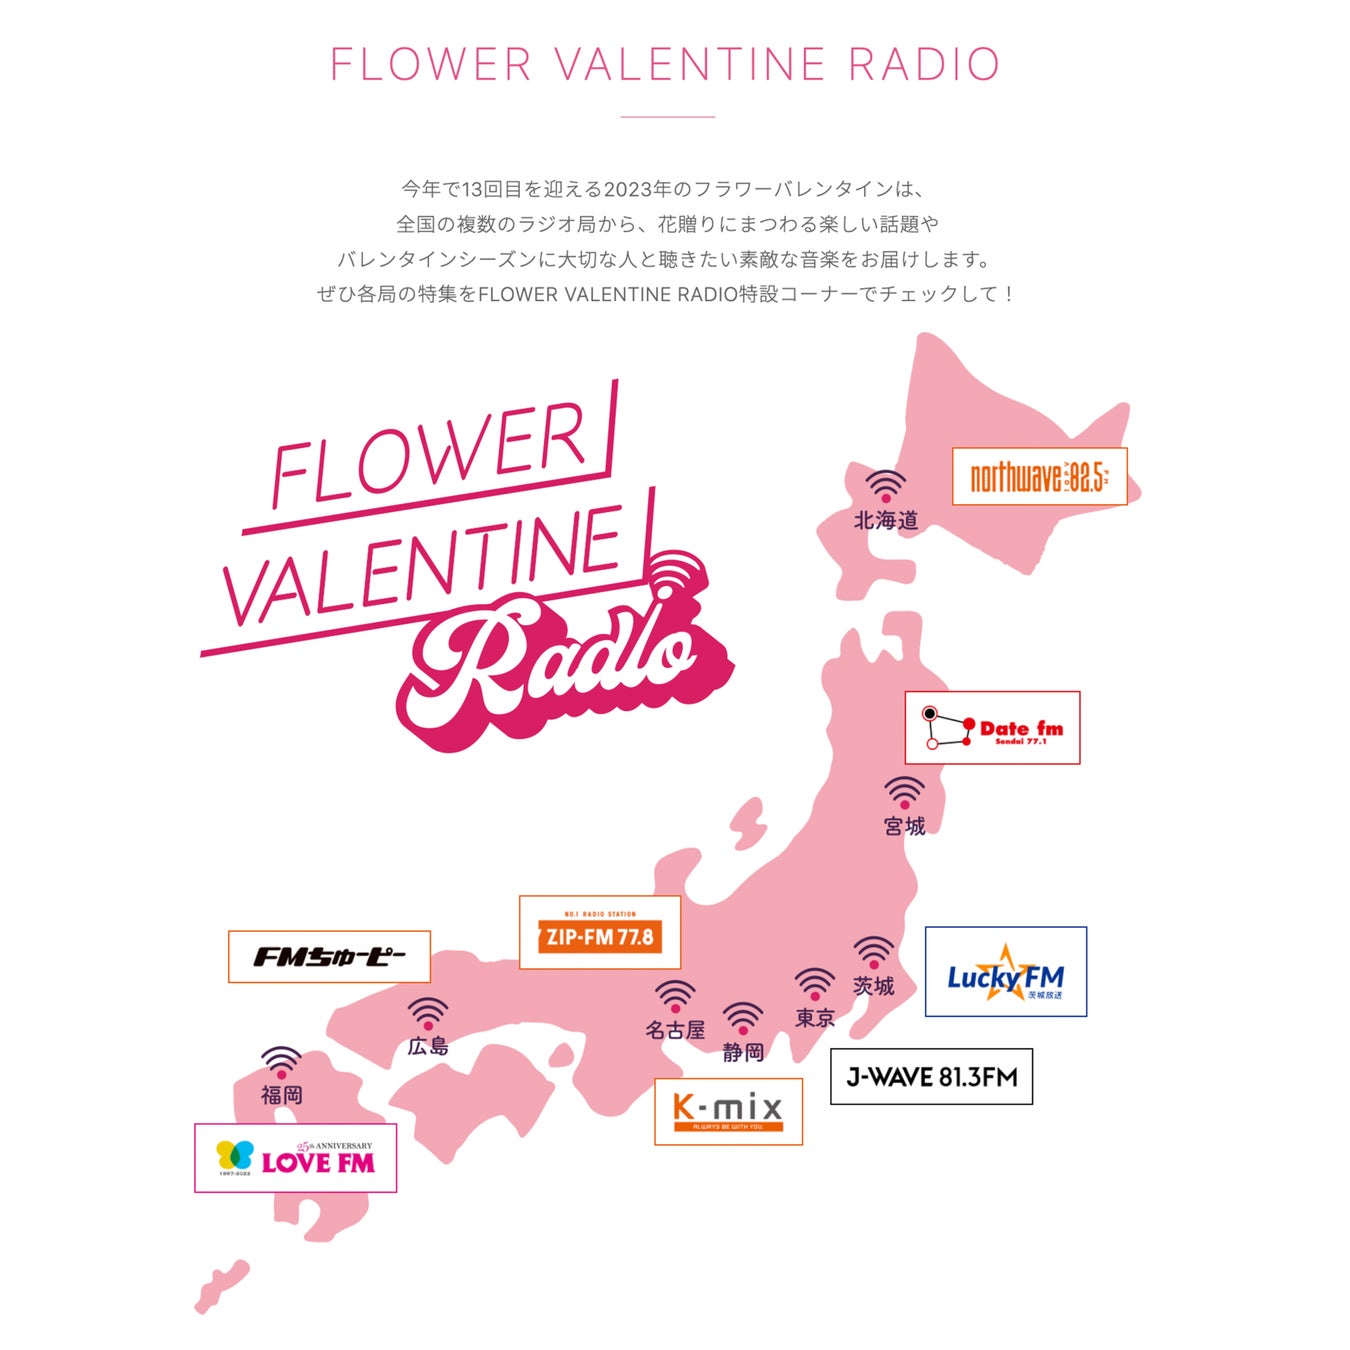 FLOWER VALENTINE RADIO 企画　2/1～本格展開、全国8局のラジオ局とタイアップ！地方の花業界がバレンタイン期間を花と音楽で盛り上げます　のサブ画像1_全国8局で展開するFLOWER VALENTINE RADIO 